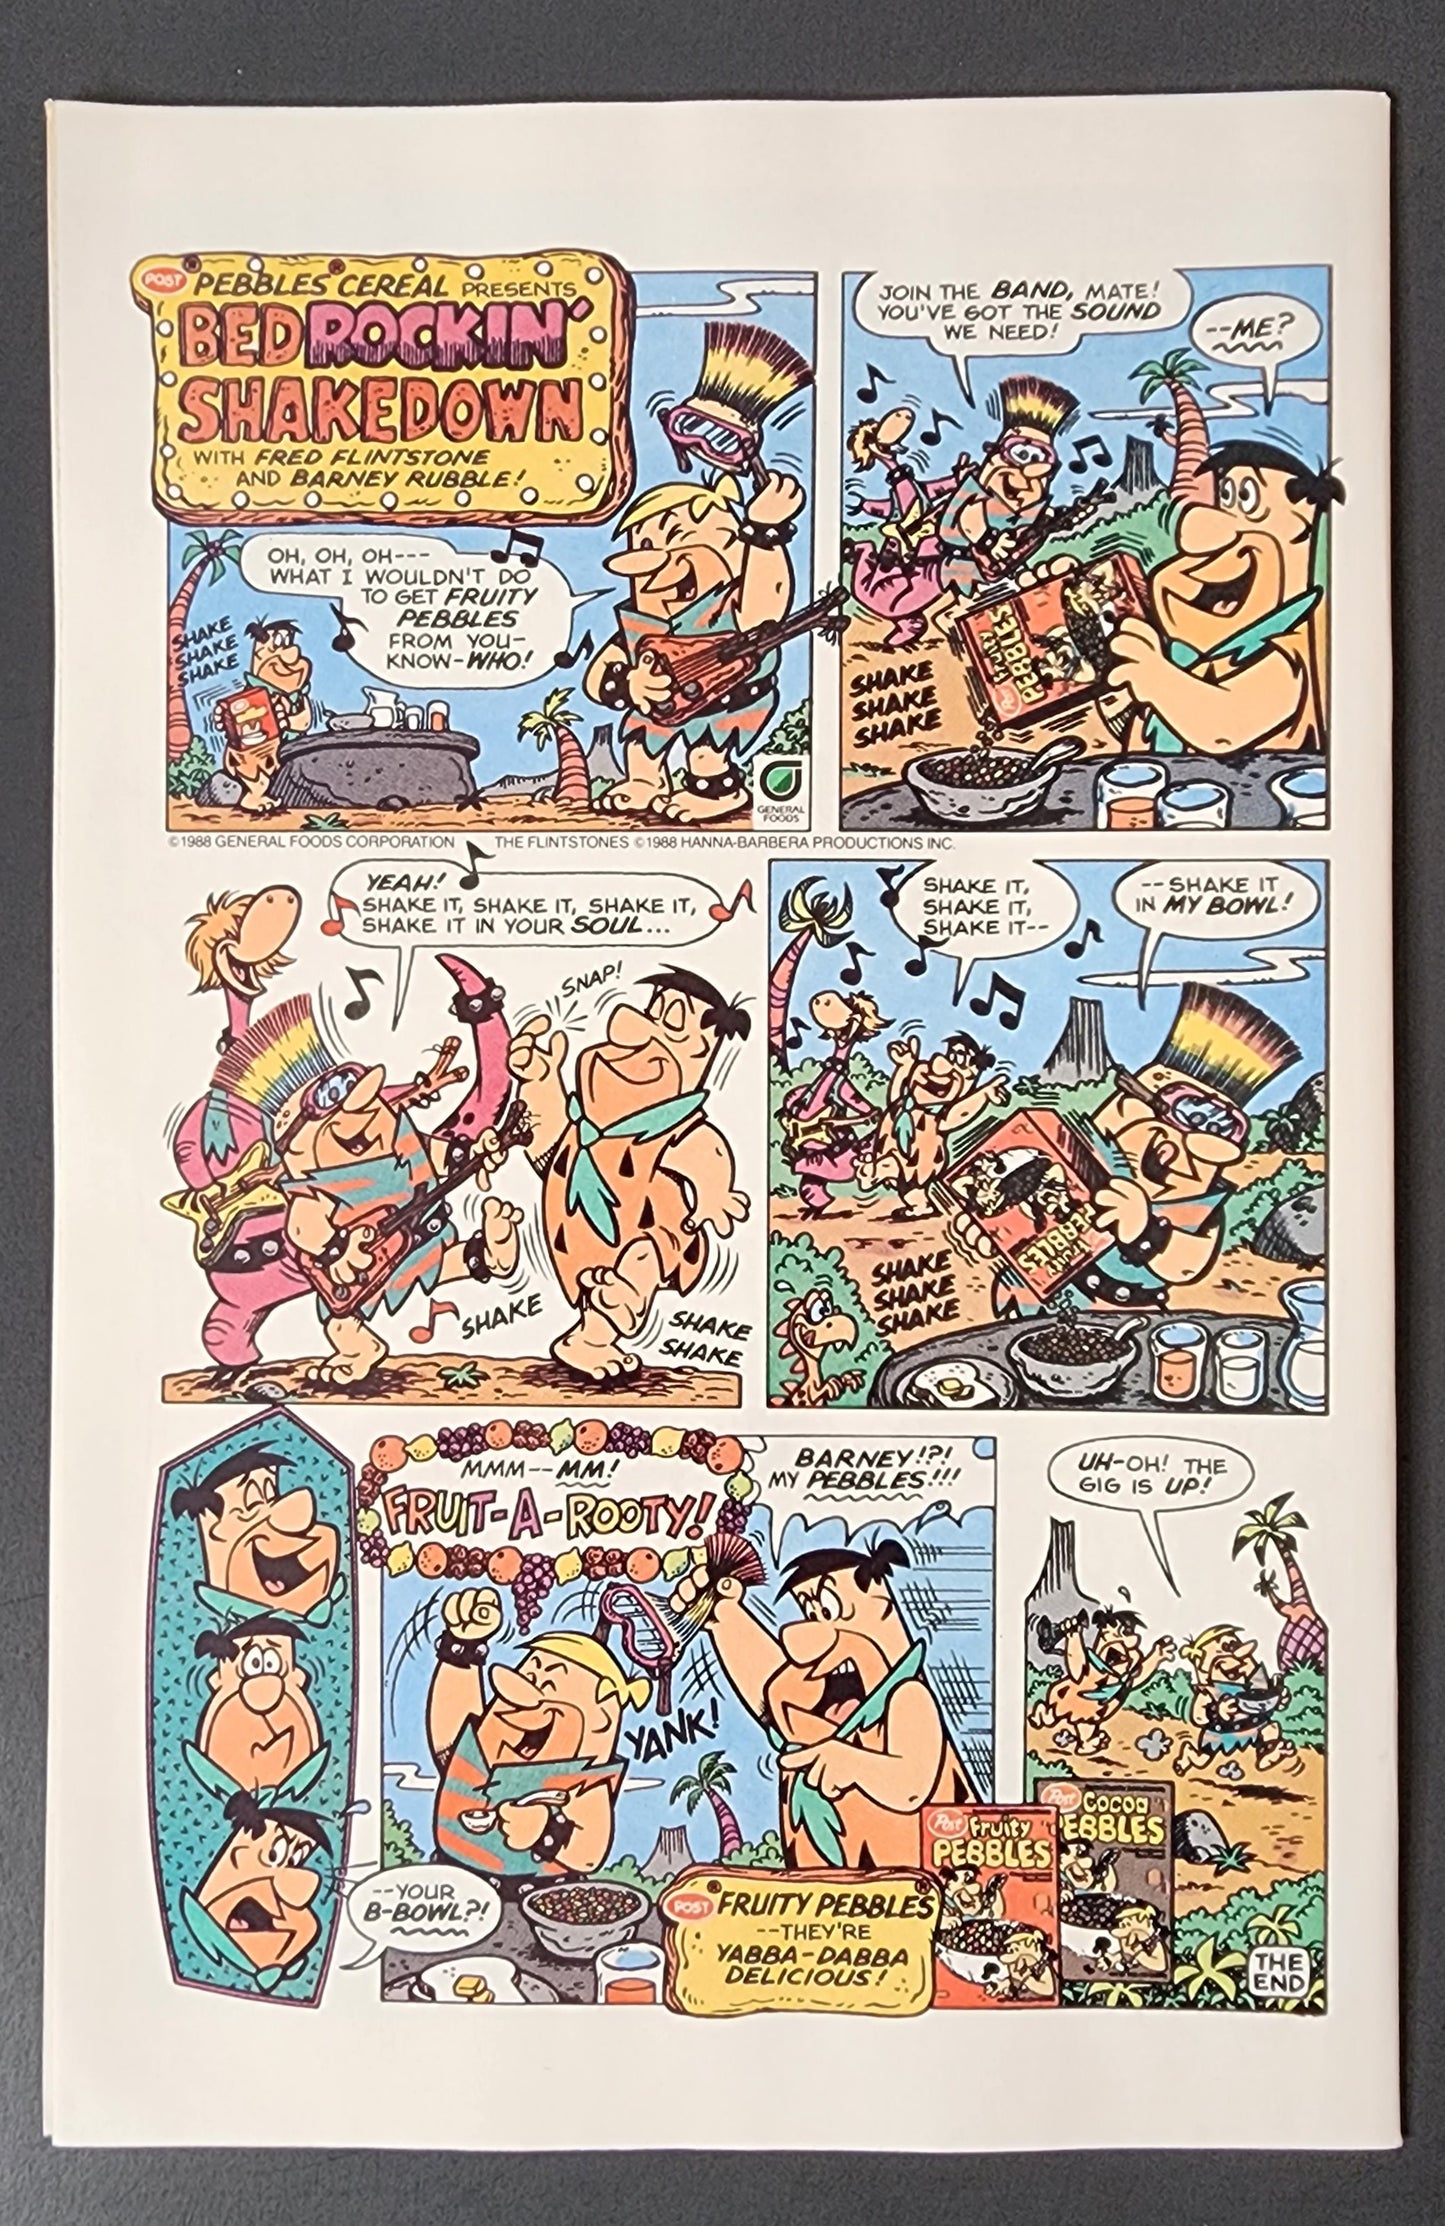 Archie's Pals 'n' Gals #199 (VF)